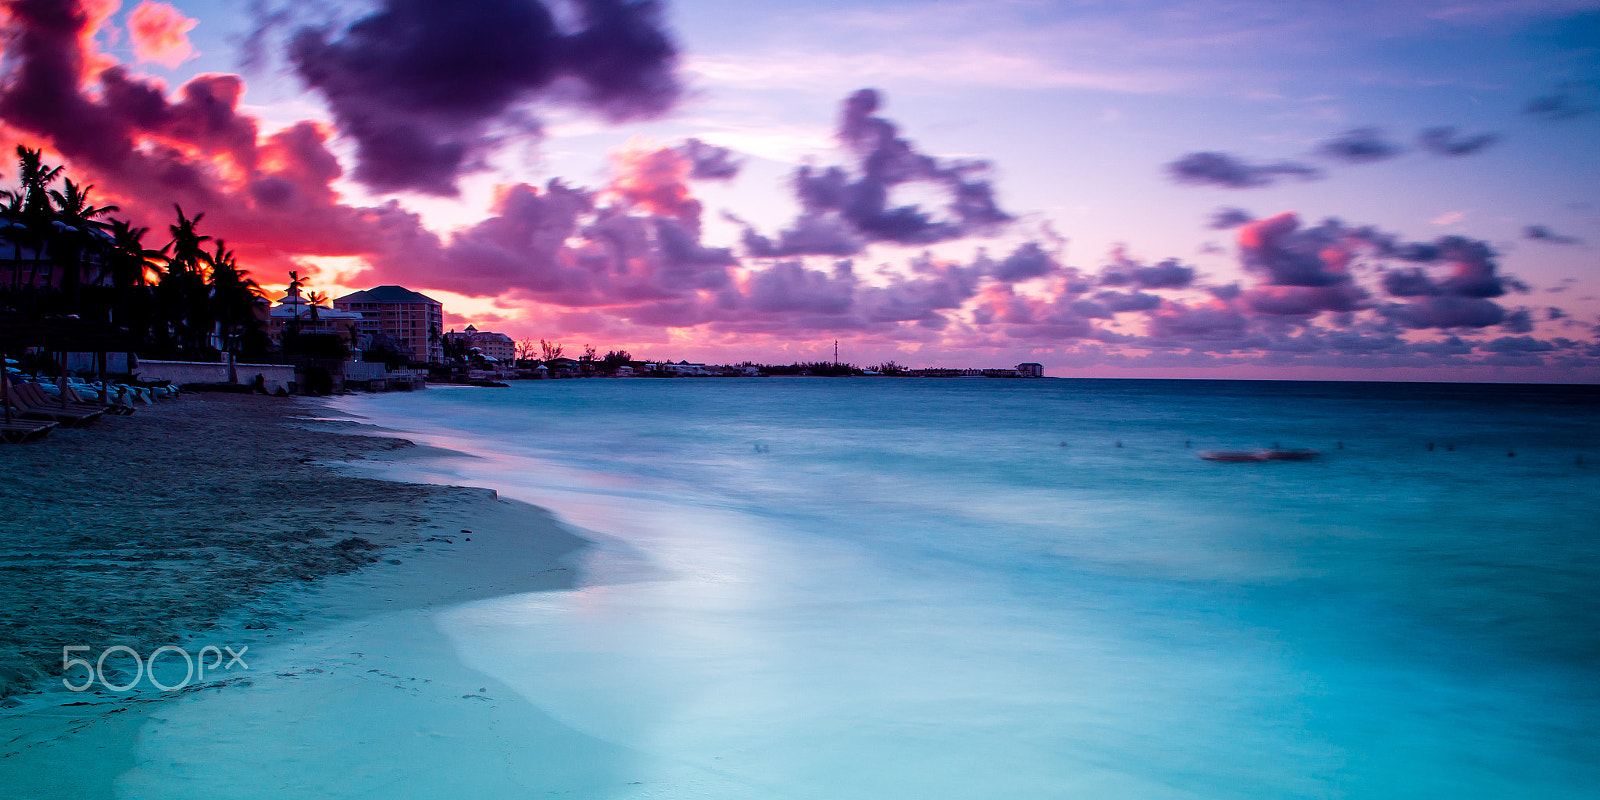 Nikon D600 sample photo. Nassau beach at sunset photography